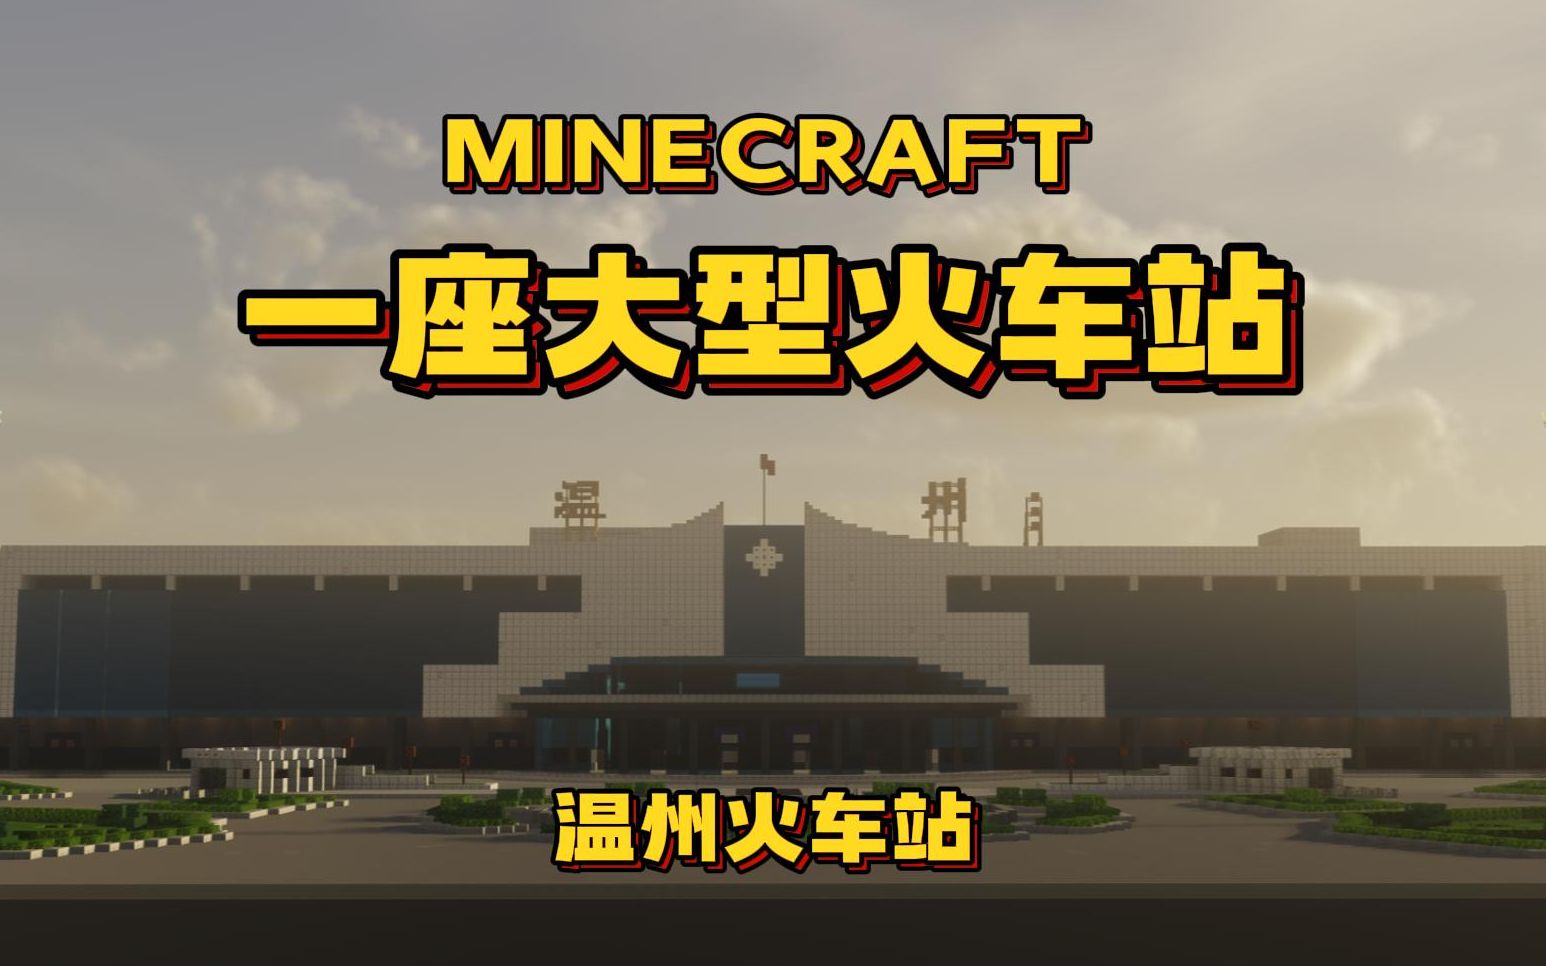 【Minecraft】挑战7天复刻一座大型火车站